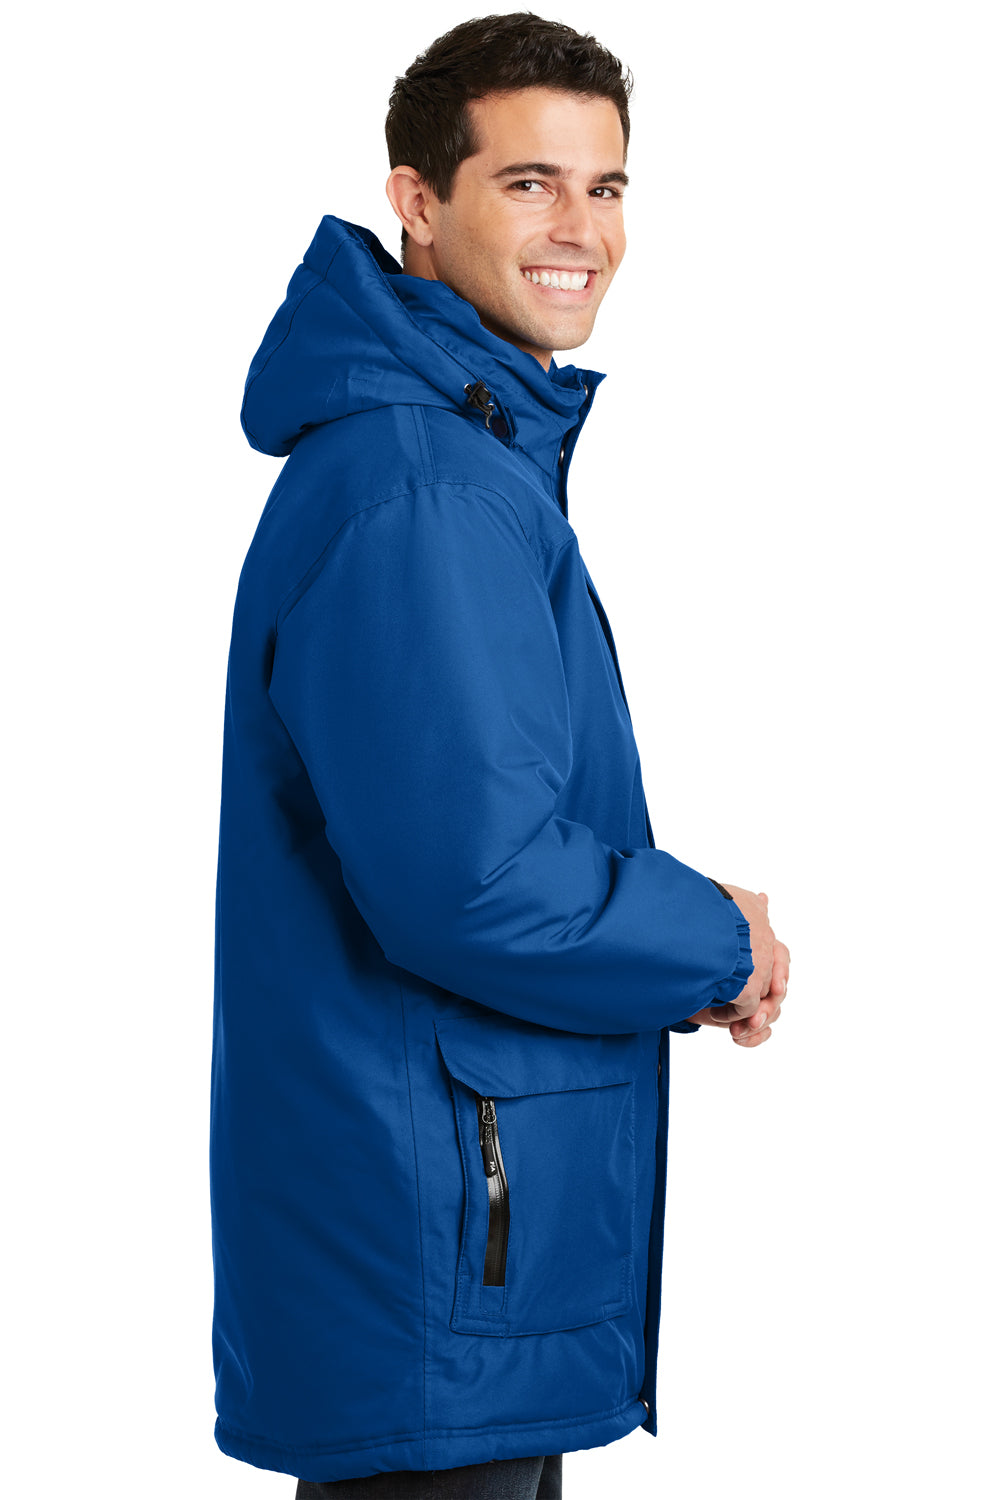 Port Authority J799 Mens Waterproof Full Zip Hooded Jacket Royal Blue Side